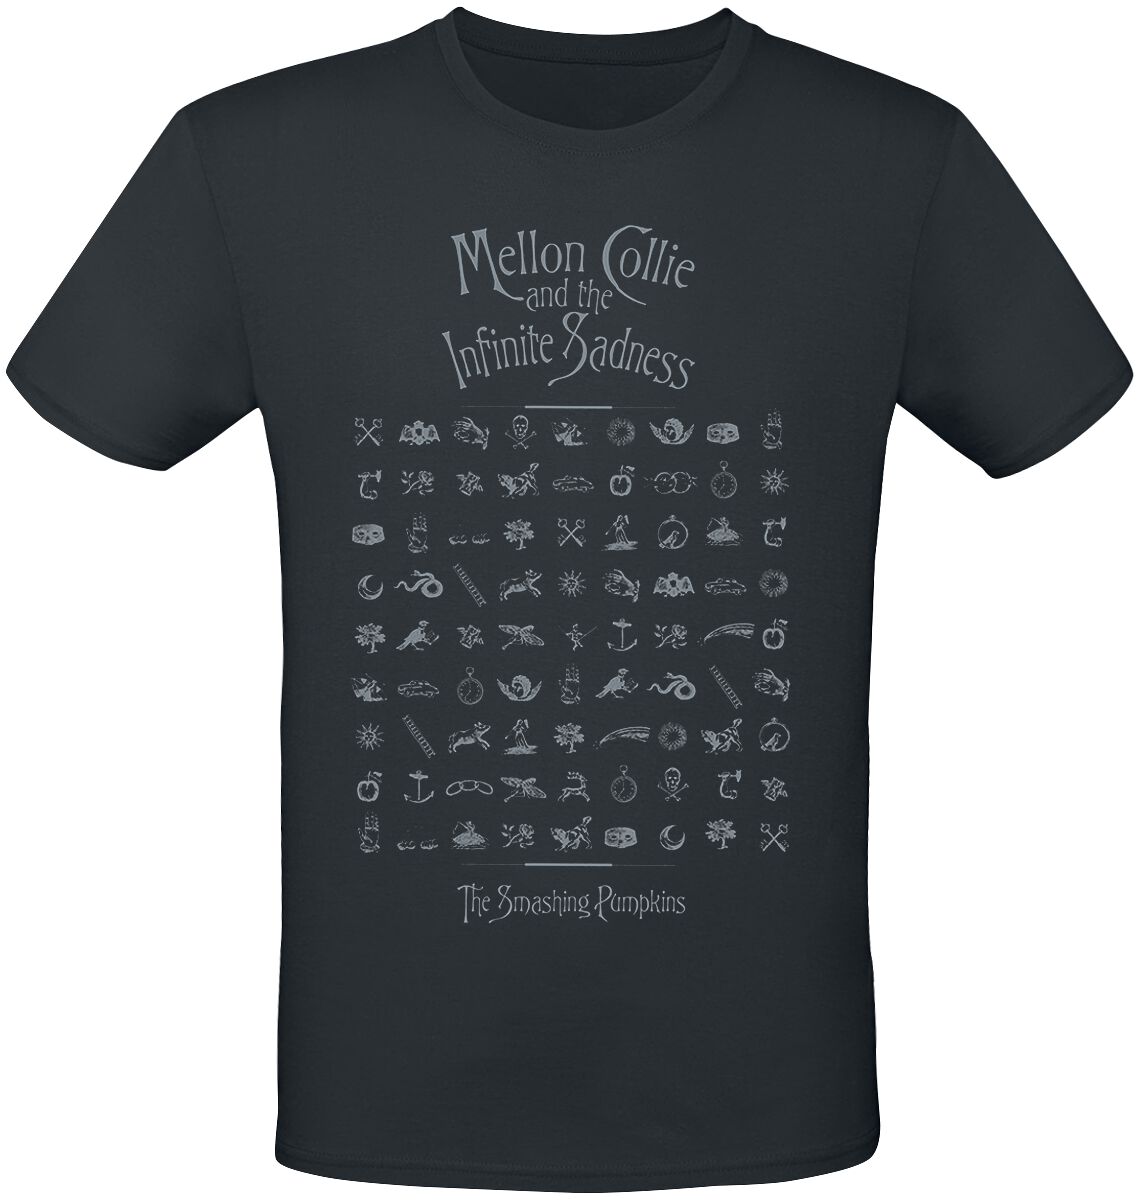 Smashing Pumpkins T-Shirt - MCATIS Symbols - S bis 3XL - für Männer - Größe 3XL - schwarz  - Lizenziertes Merchandise!